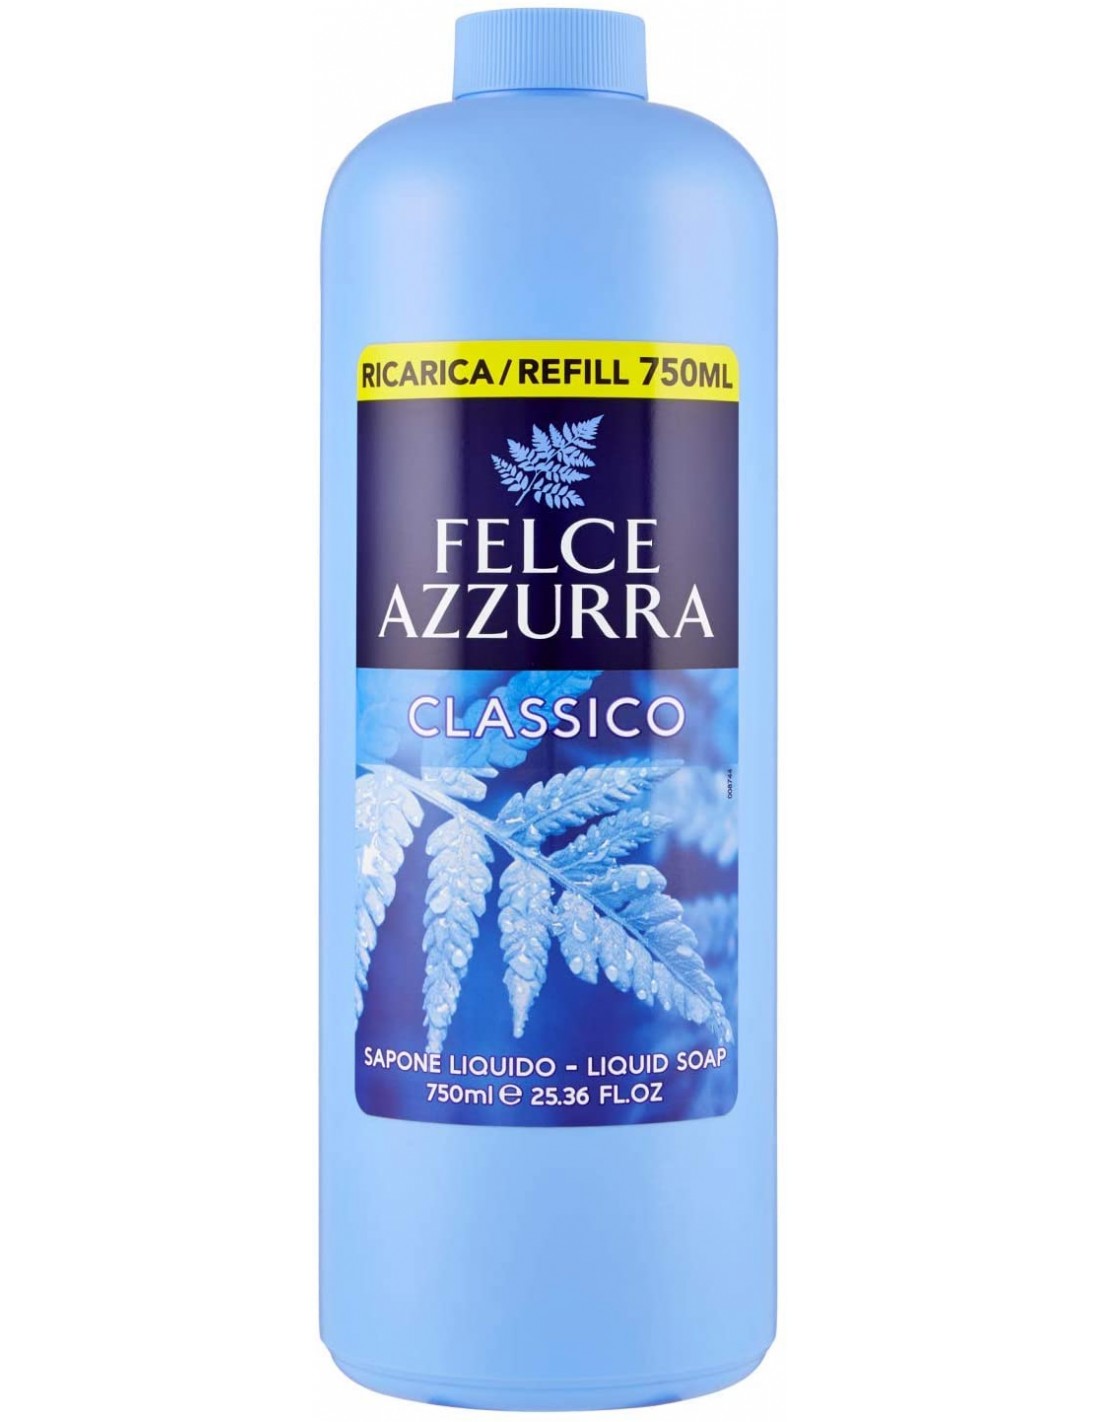 https://www.bfcommerce.it/8950-thickbox_default/felce-azzurra-sapone-liquido-ricarica-refill-750ml-classico.jpg